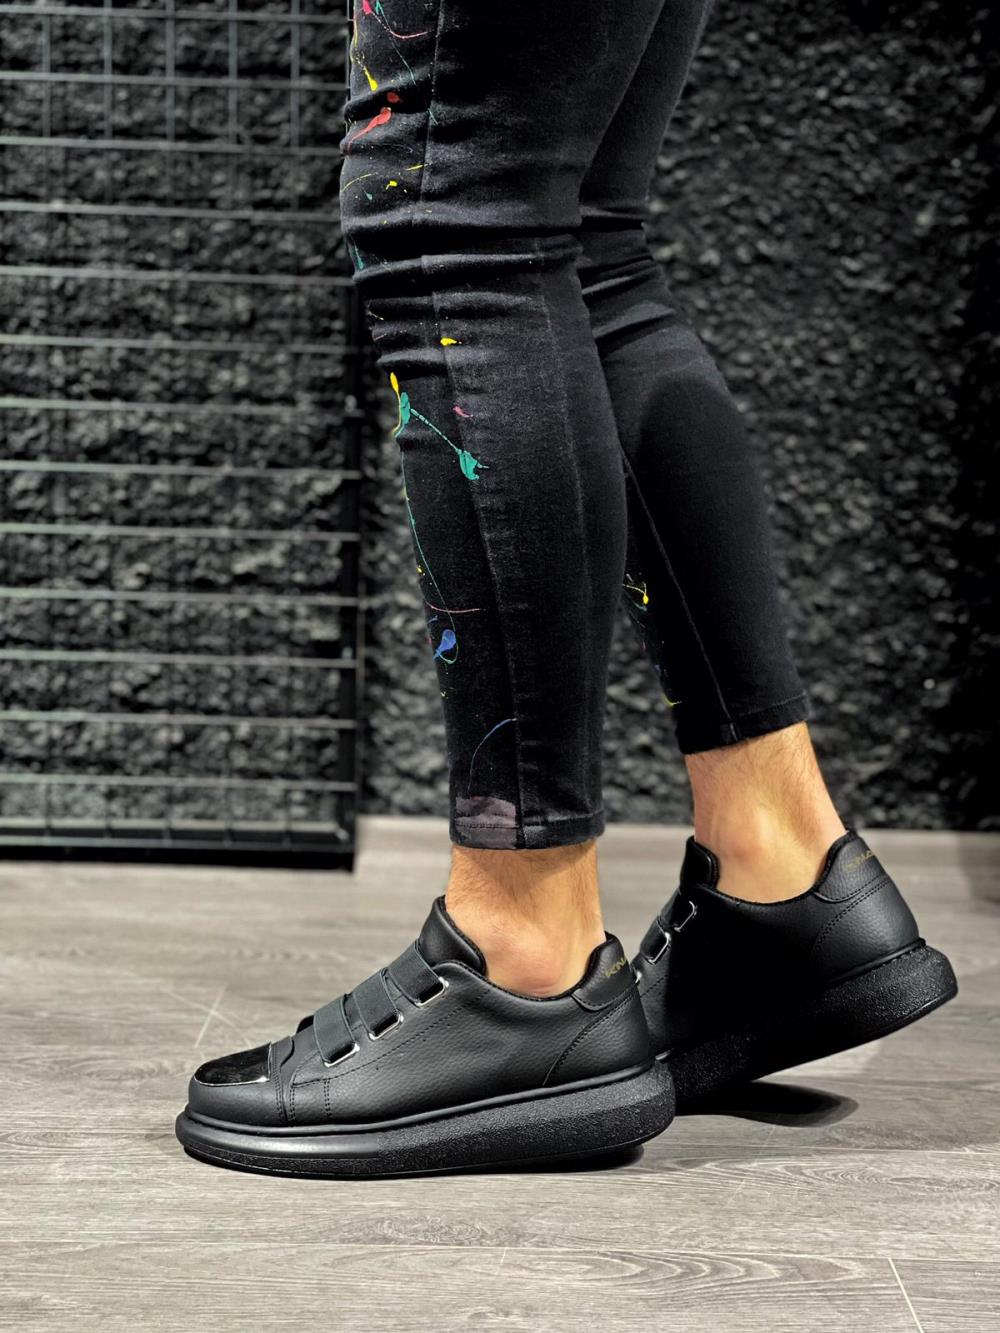 Knack Sneakers Shoes 888 Black (Black Sole) - STREETMODE™